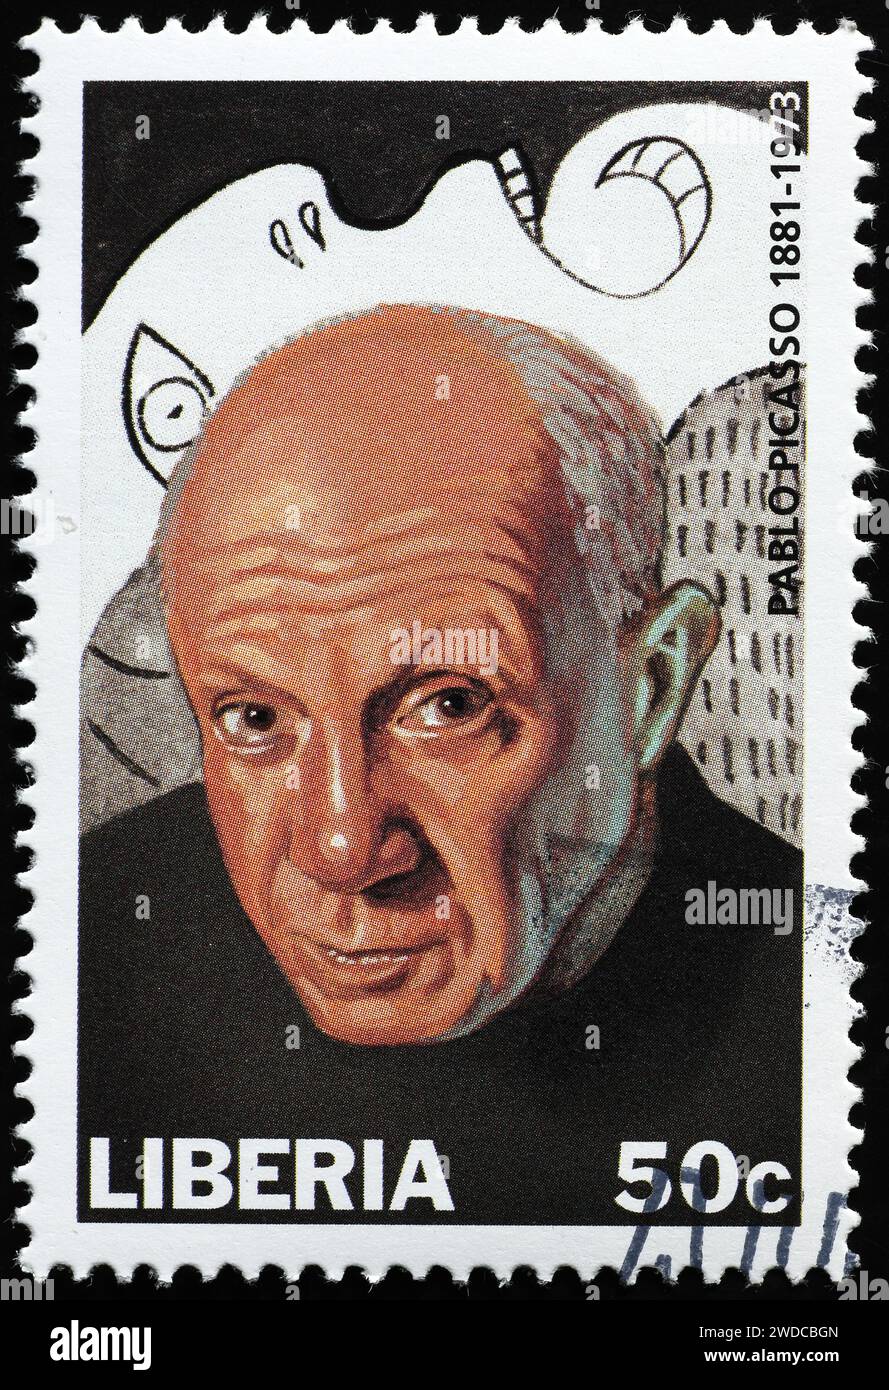 Portrait de Pablo Picasso sur timbre-poste du Liberia Banque D'Images